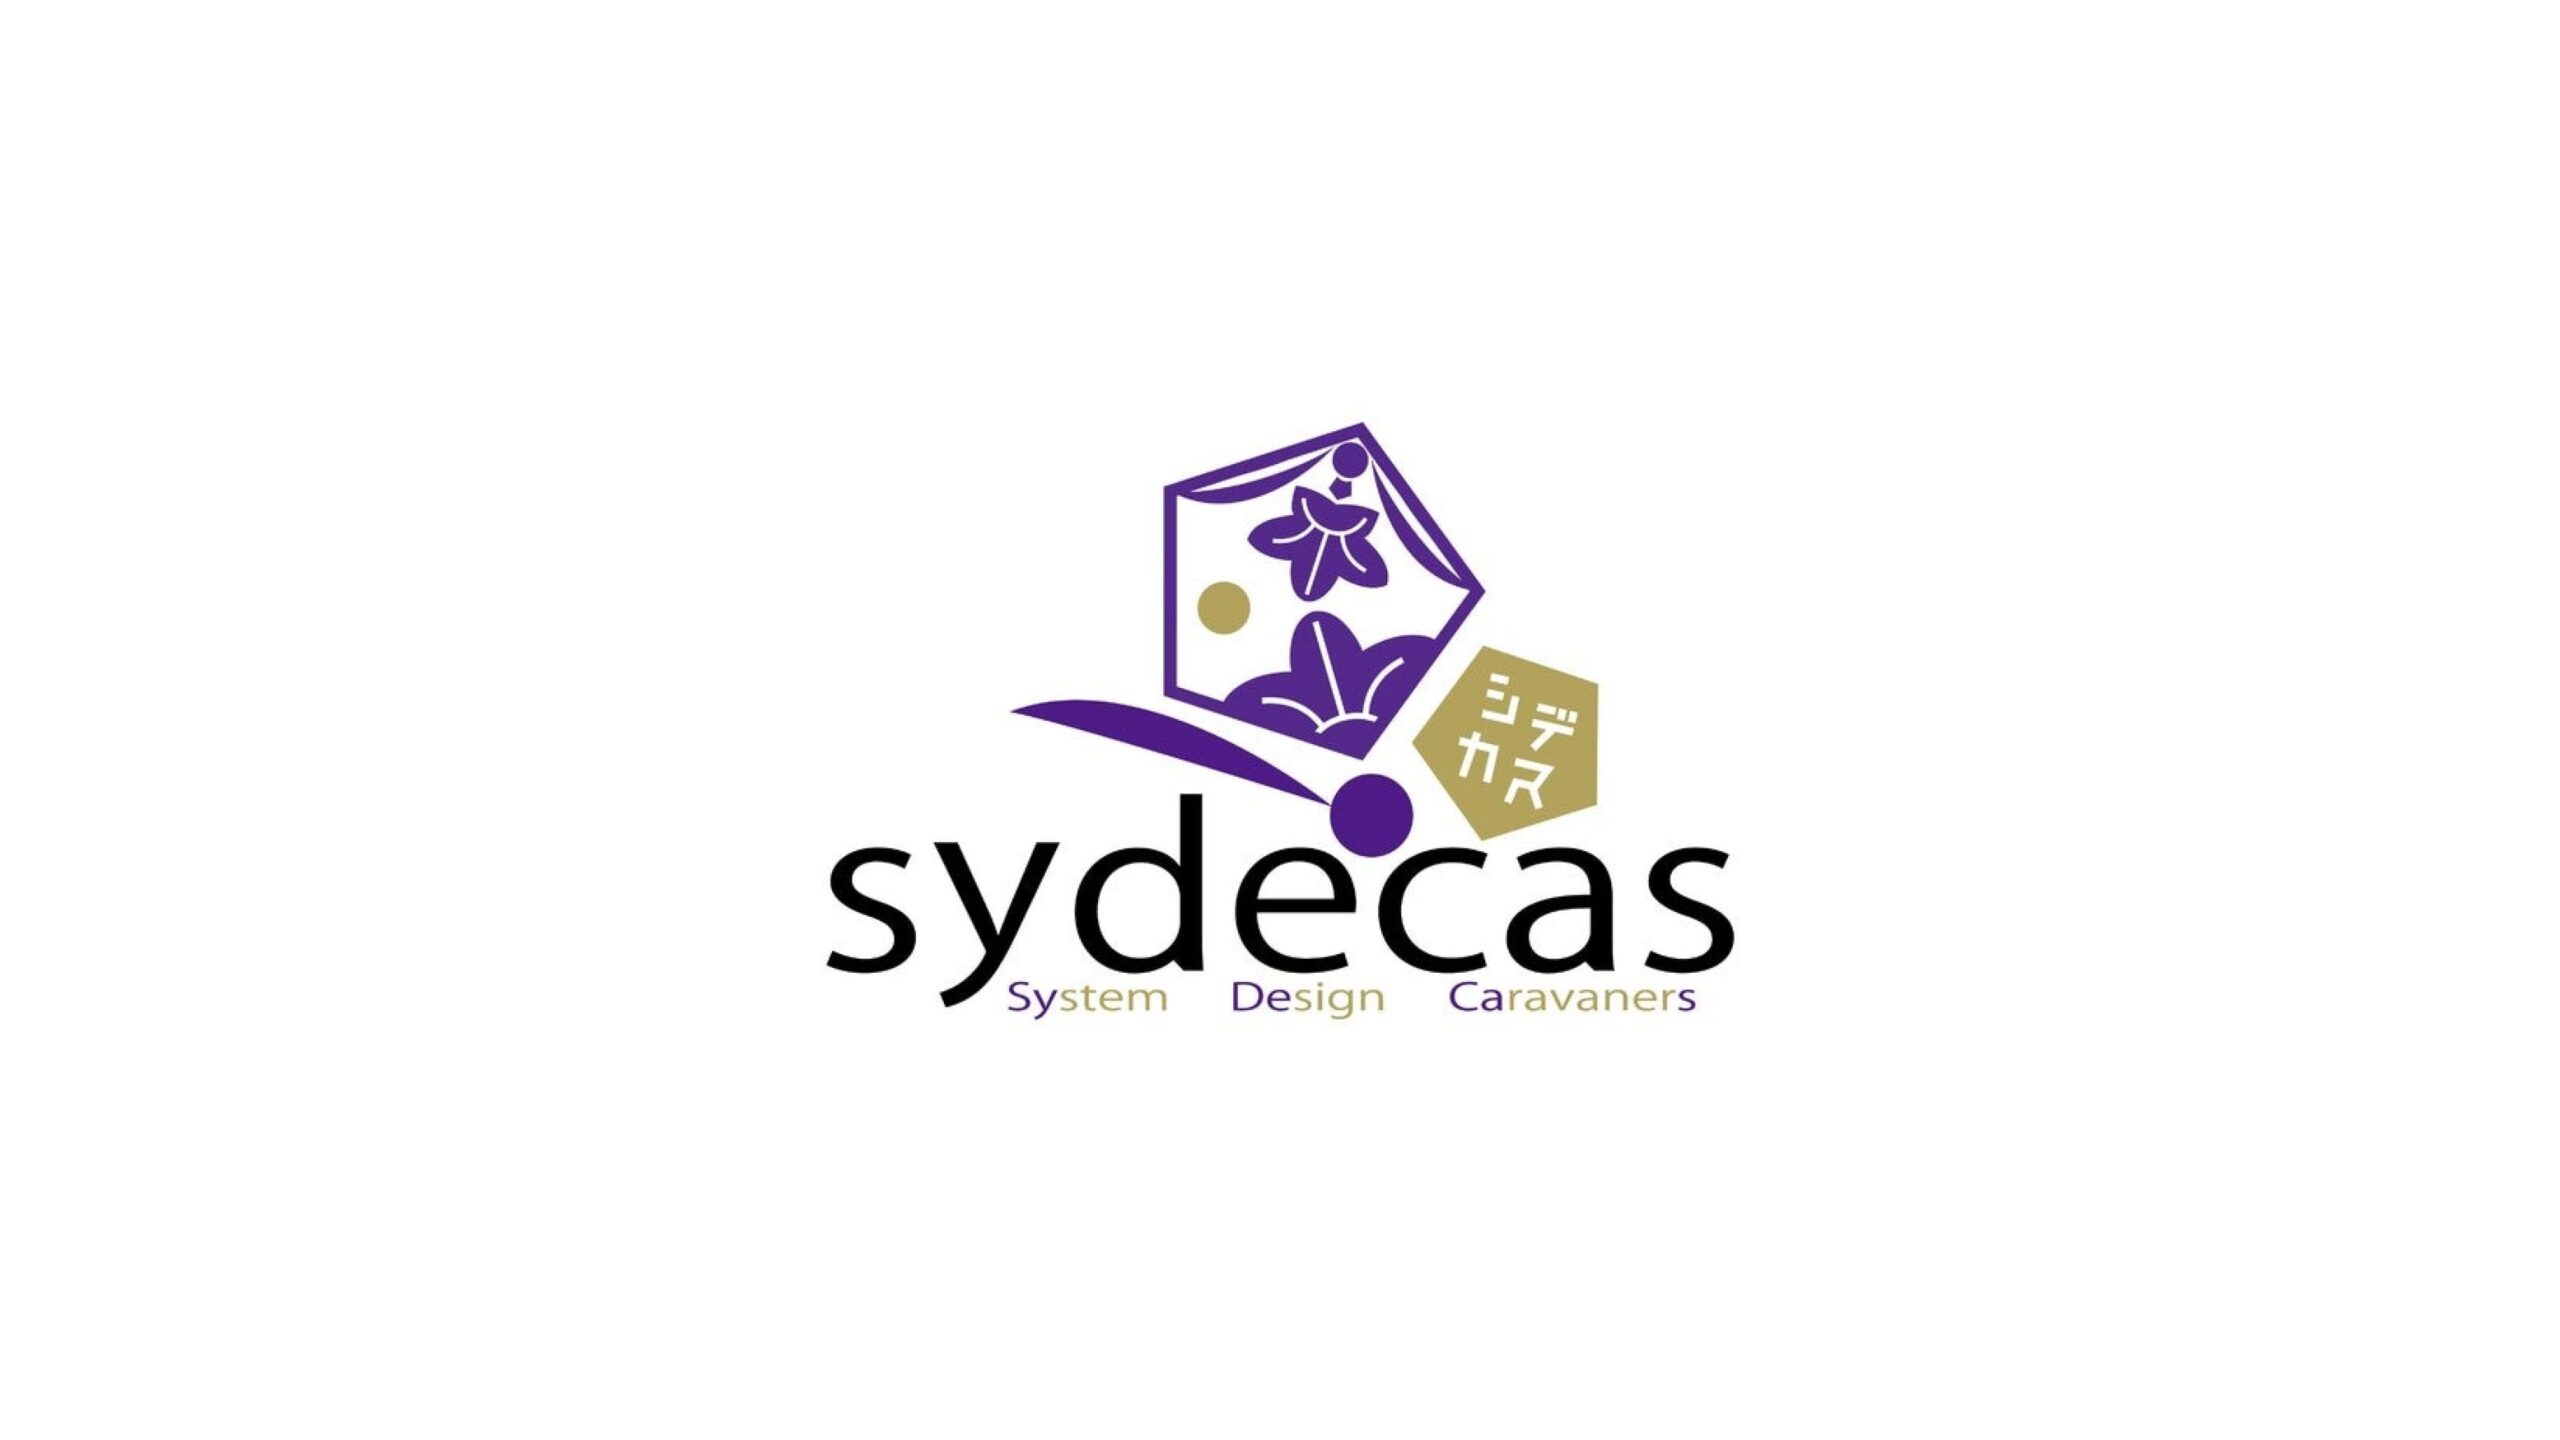 あたらしい食のカタチをつくるフードテック「NinjaFoods」を展開する株式会社Sydecas、資金調達を実施